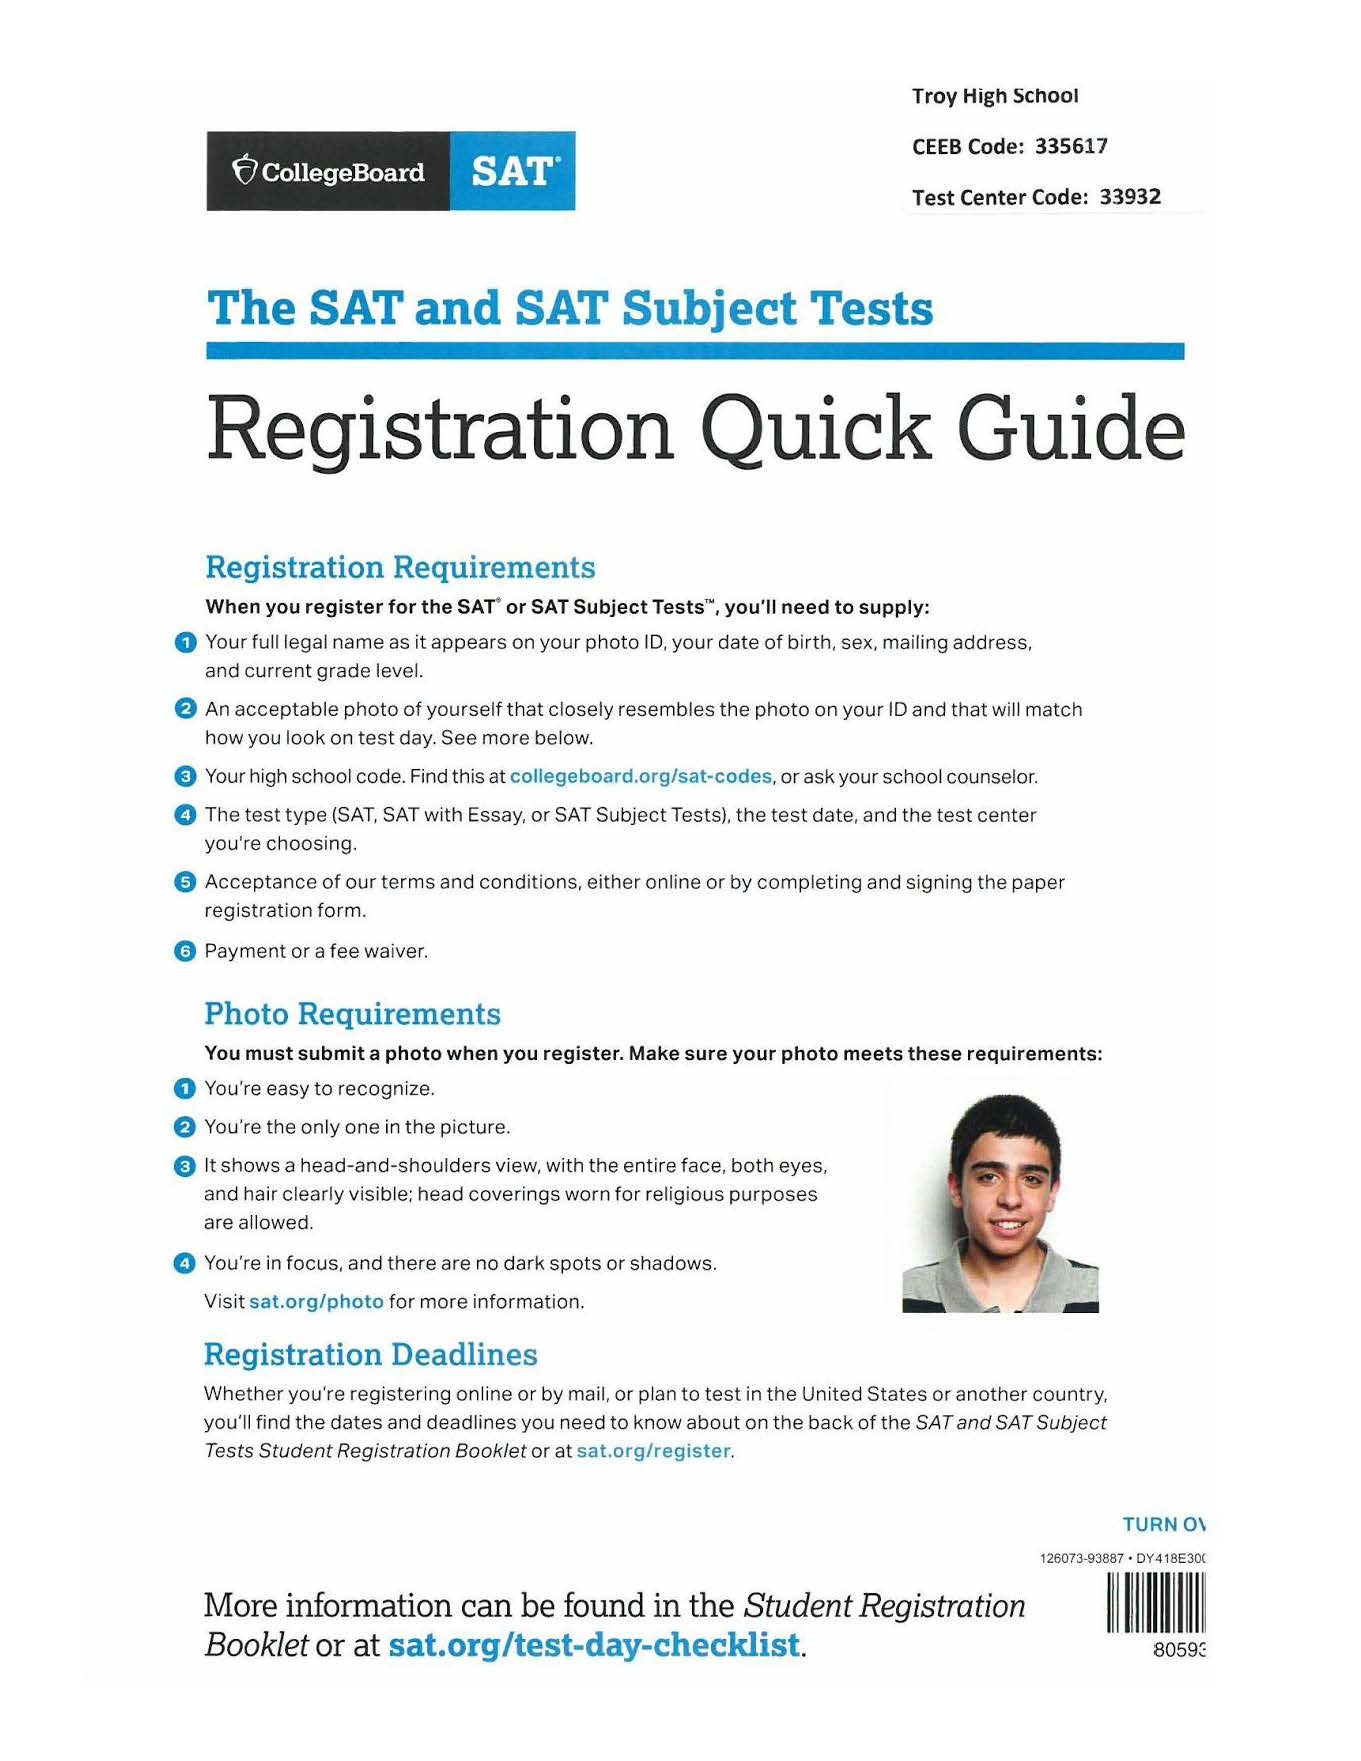 SAT registration guide